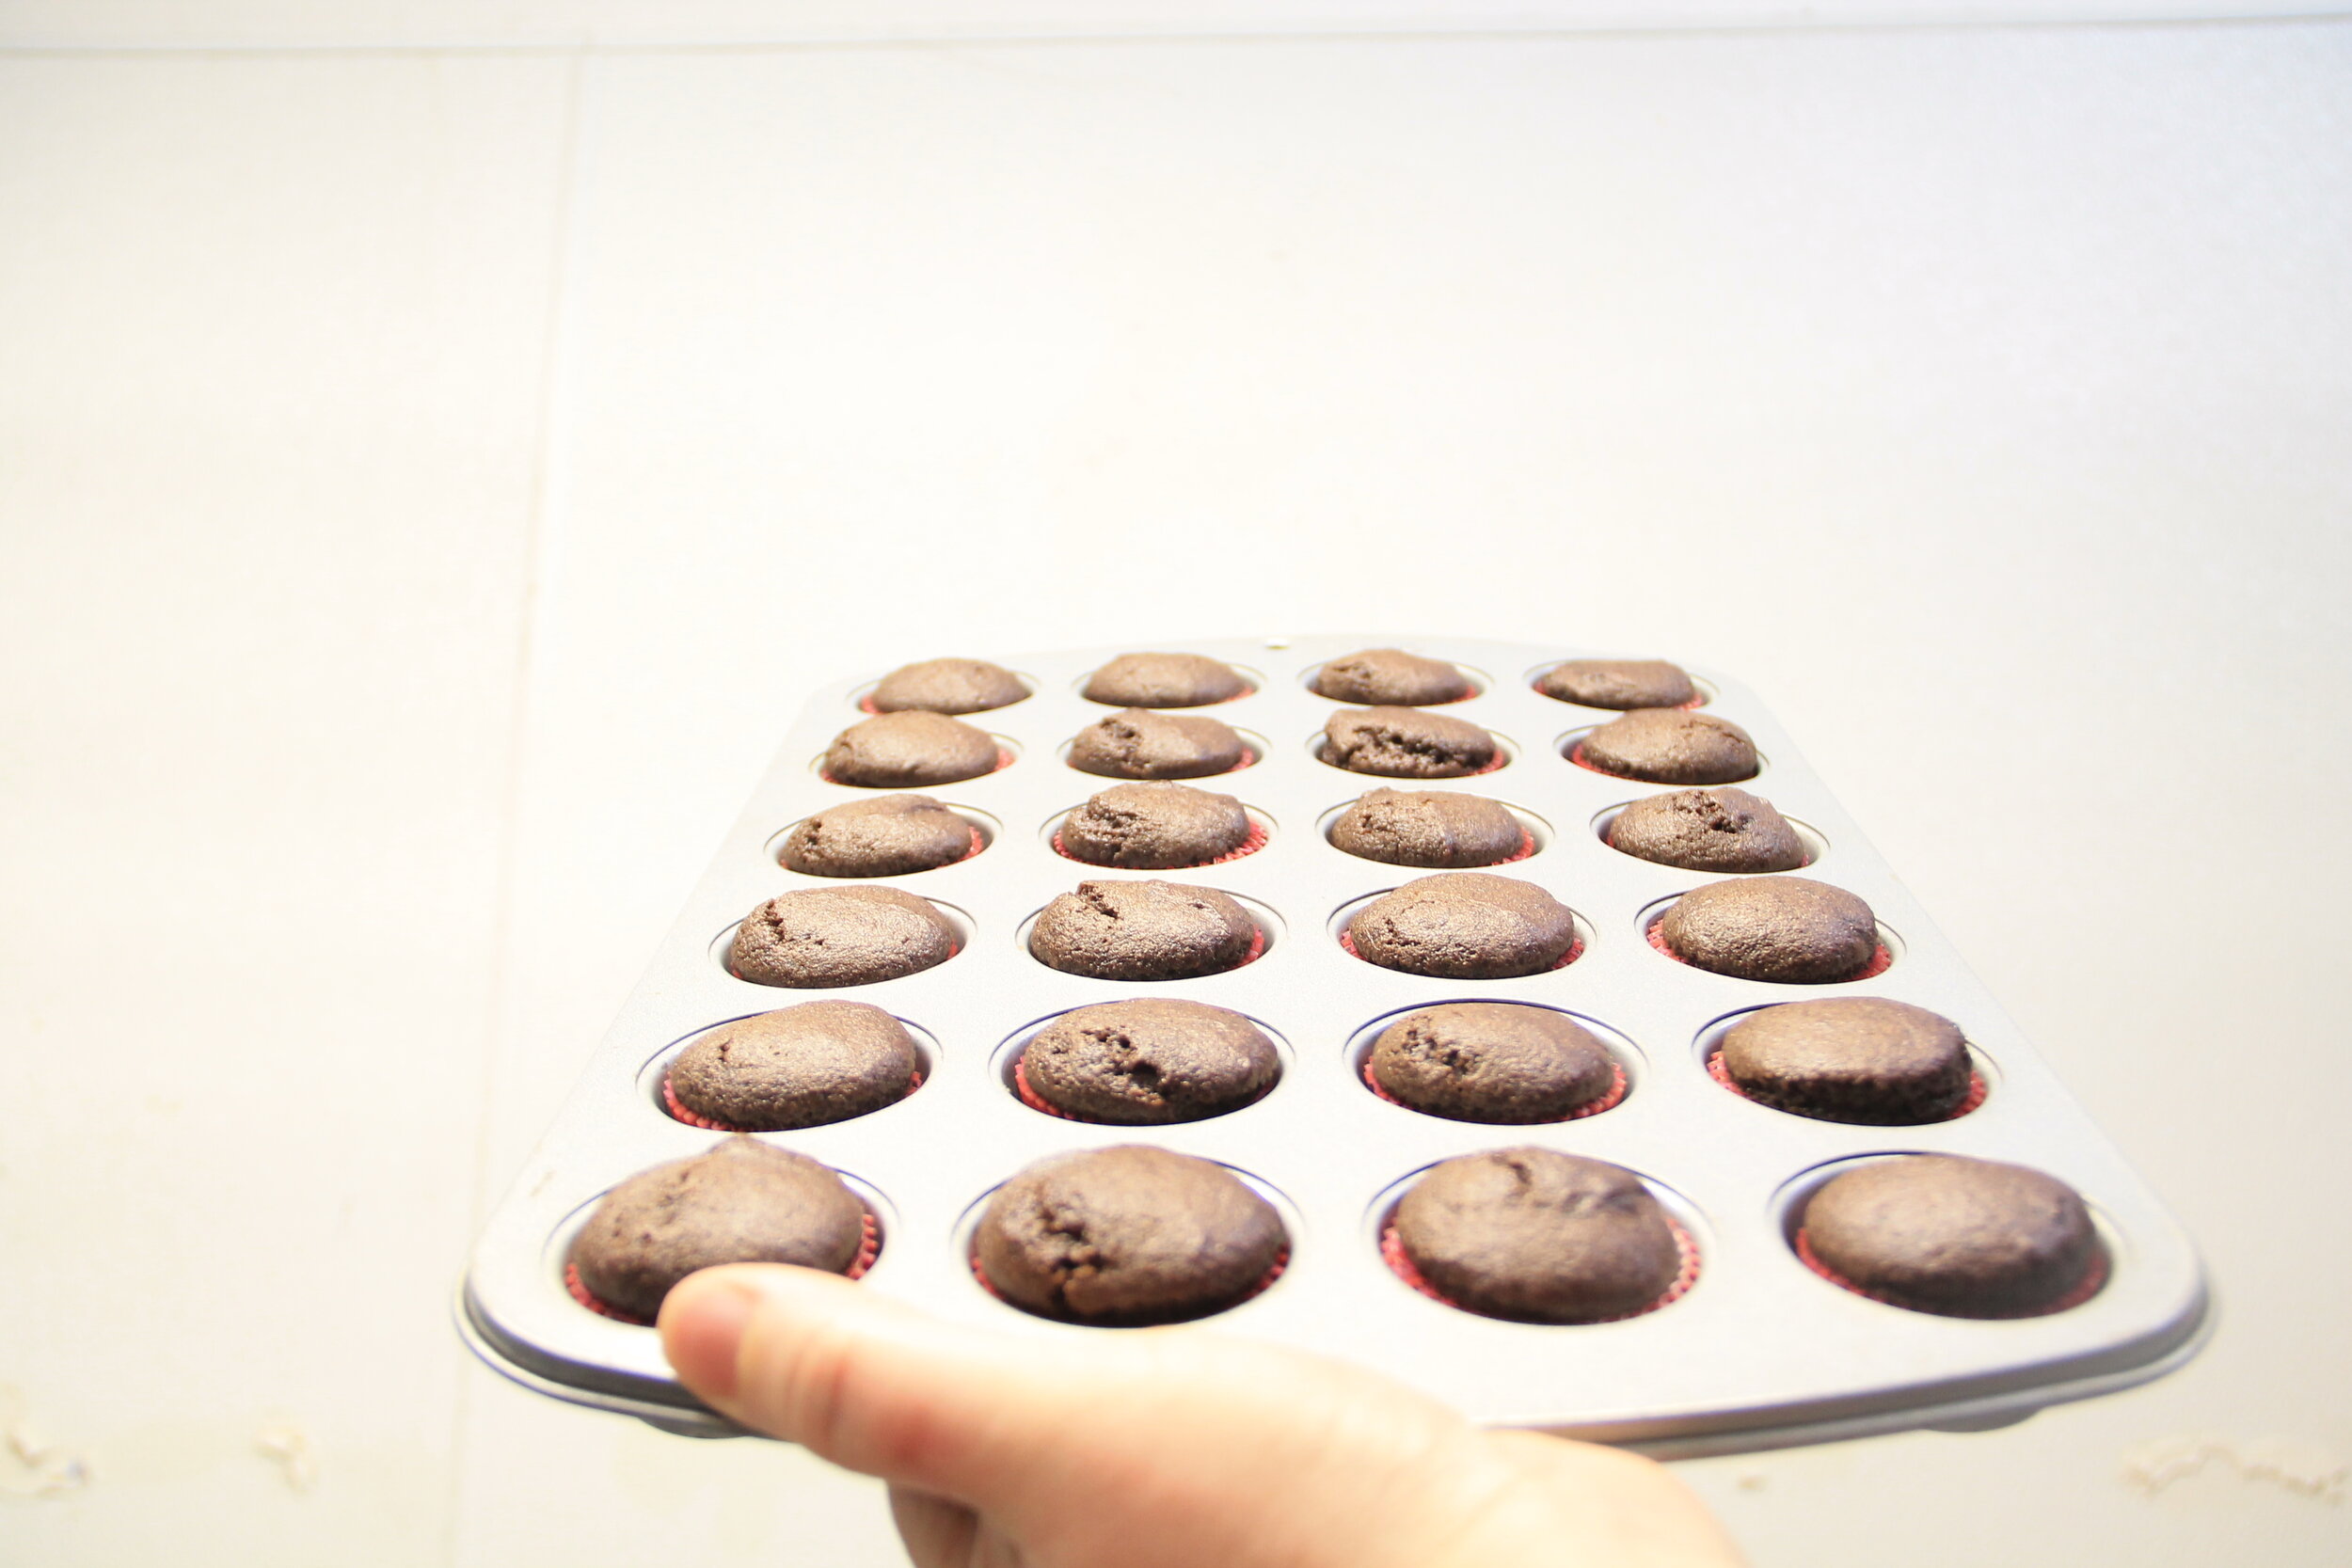 Chocolate cupcakes 